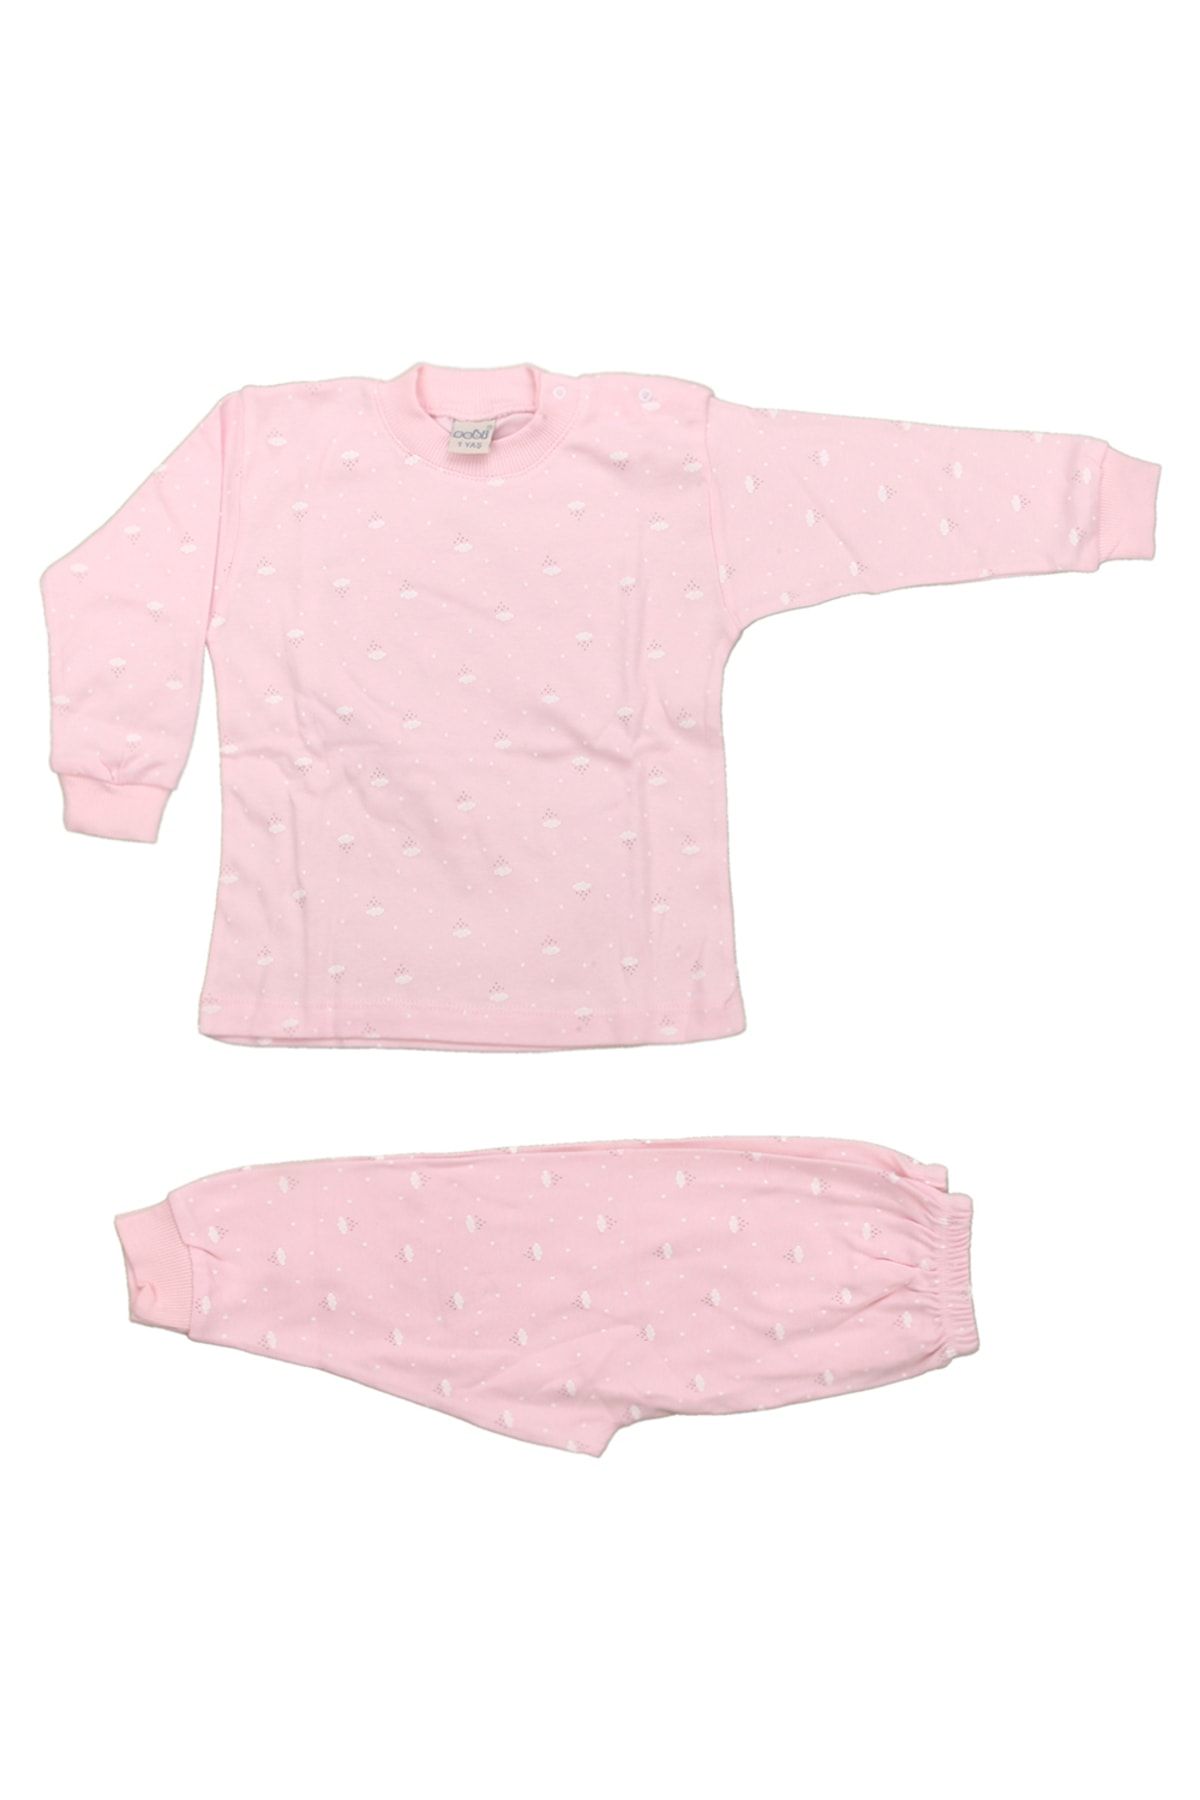 Sebi Bebe Bebek Pijama Takımı Desenli Bulut